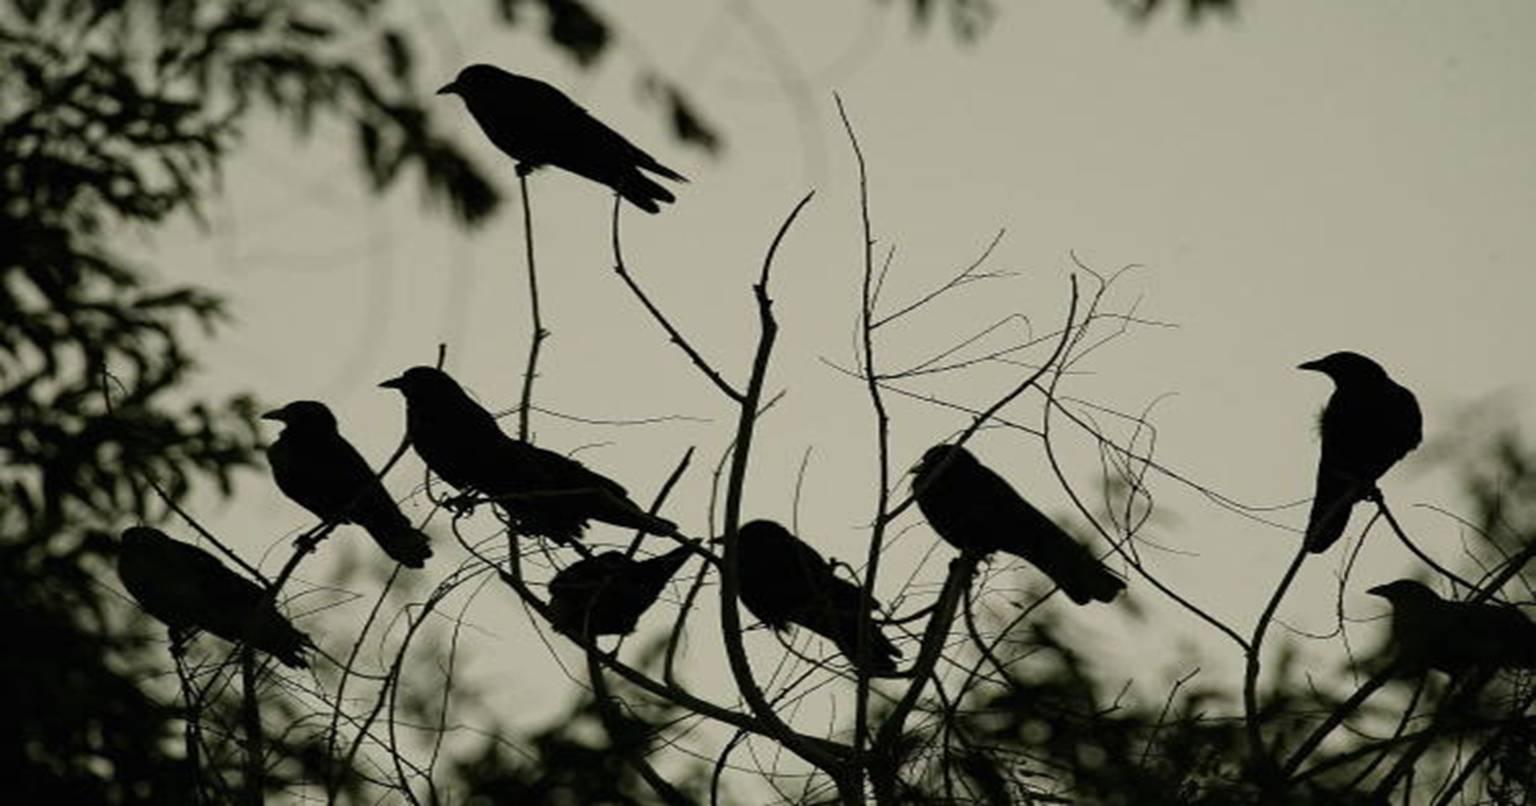 जानिए आखिर क्यों है यह पेड़ इतना भूखा…जो खा जाता है उड़ते हुए पक्षियों को!